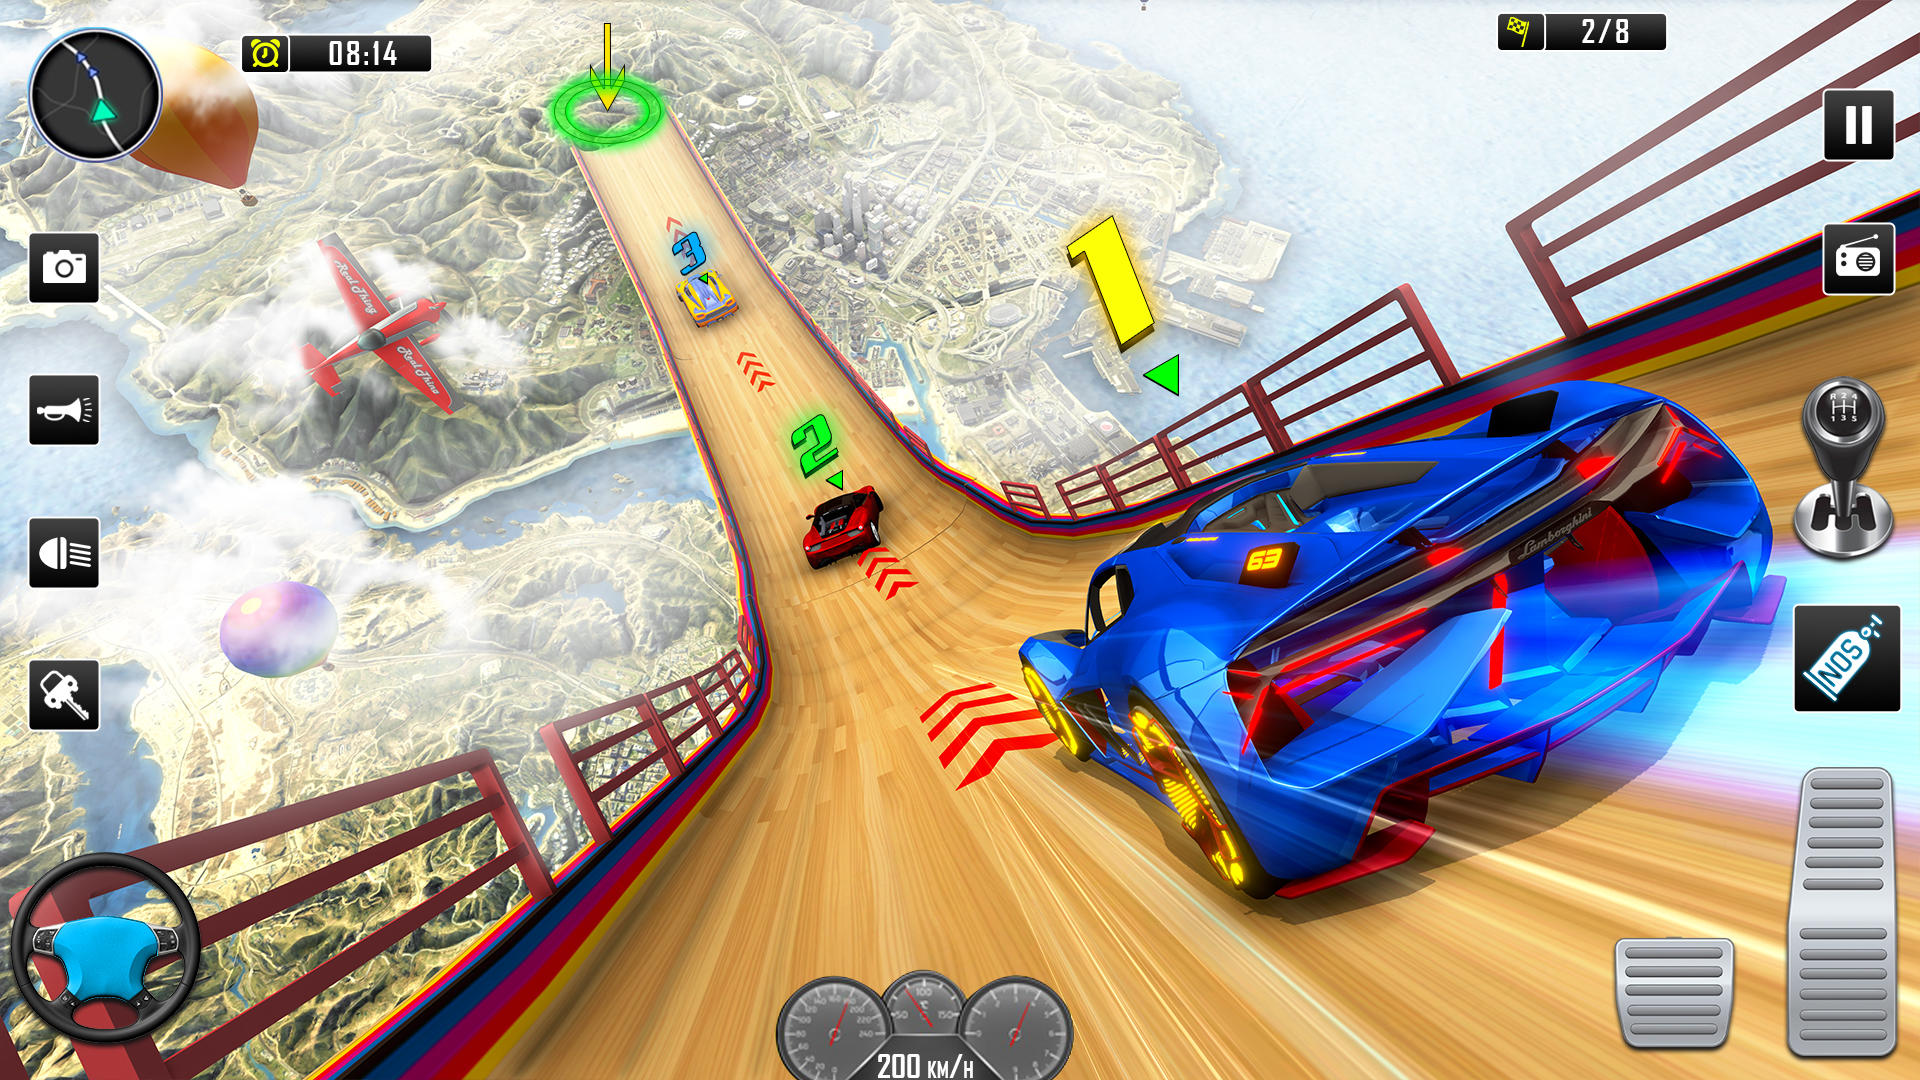 Screenshot 1 of 램프 자동차 스턴트: 자동차 게임 3.1